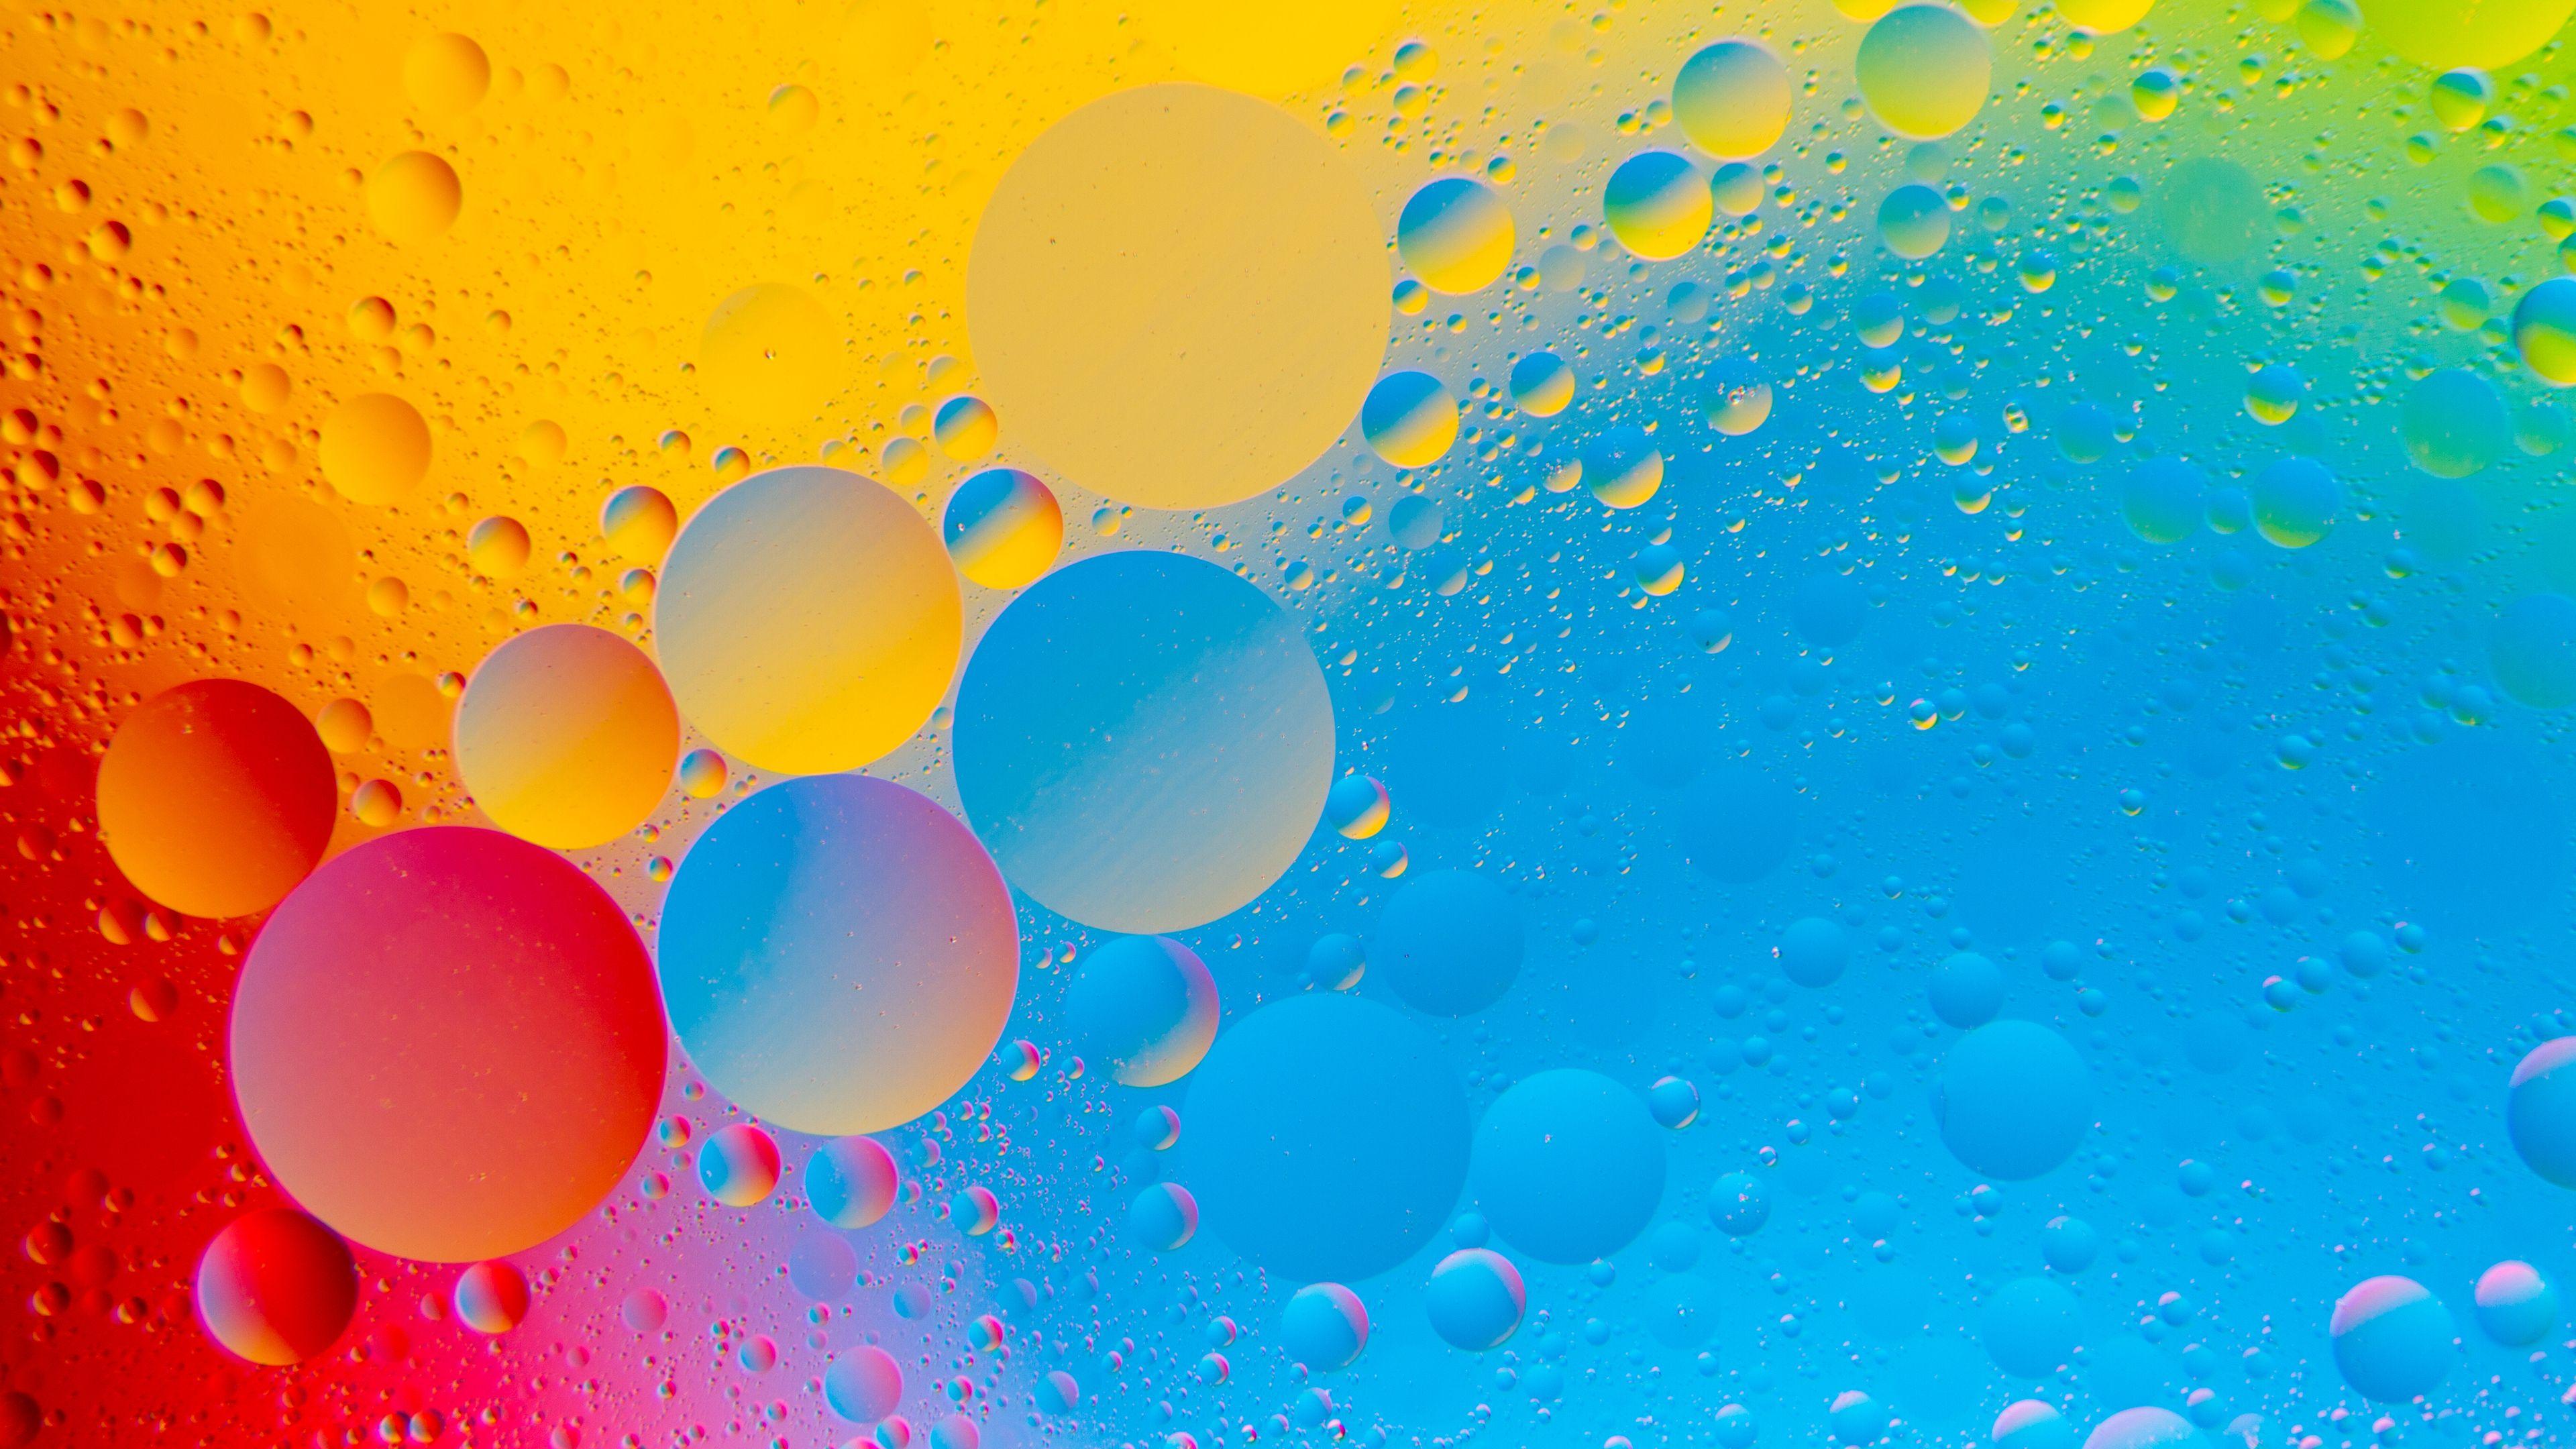 4k Color Wallpapers - Top Những Hình Ảnh Đẹp